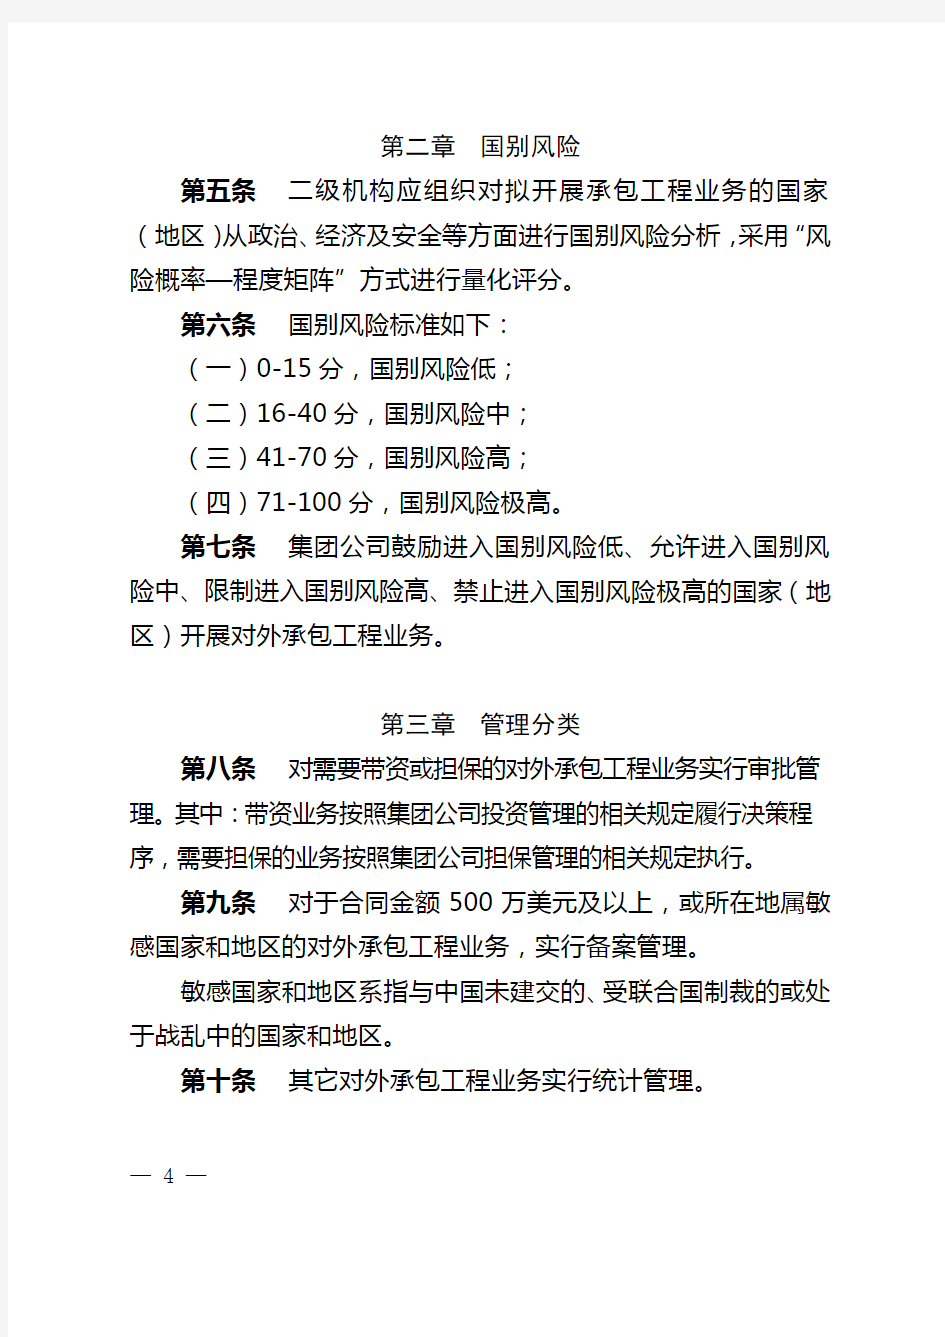 中国华电集团公司对外承包工程管理办法